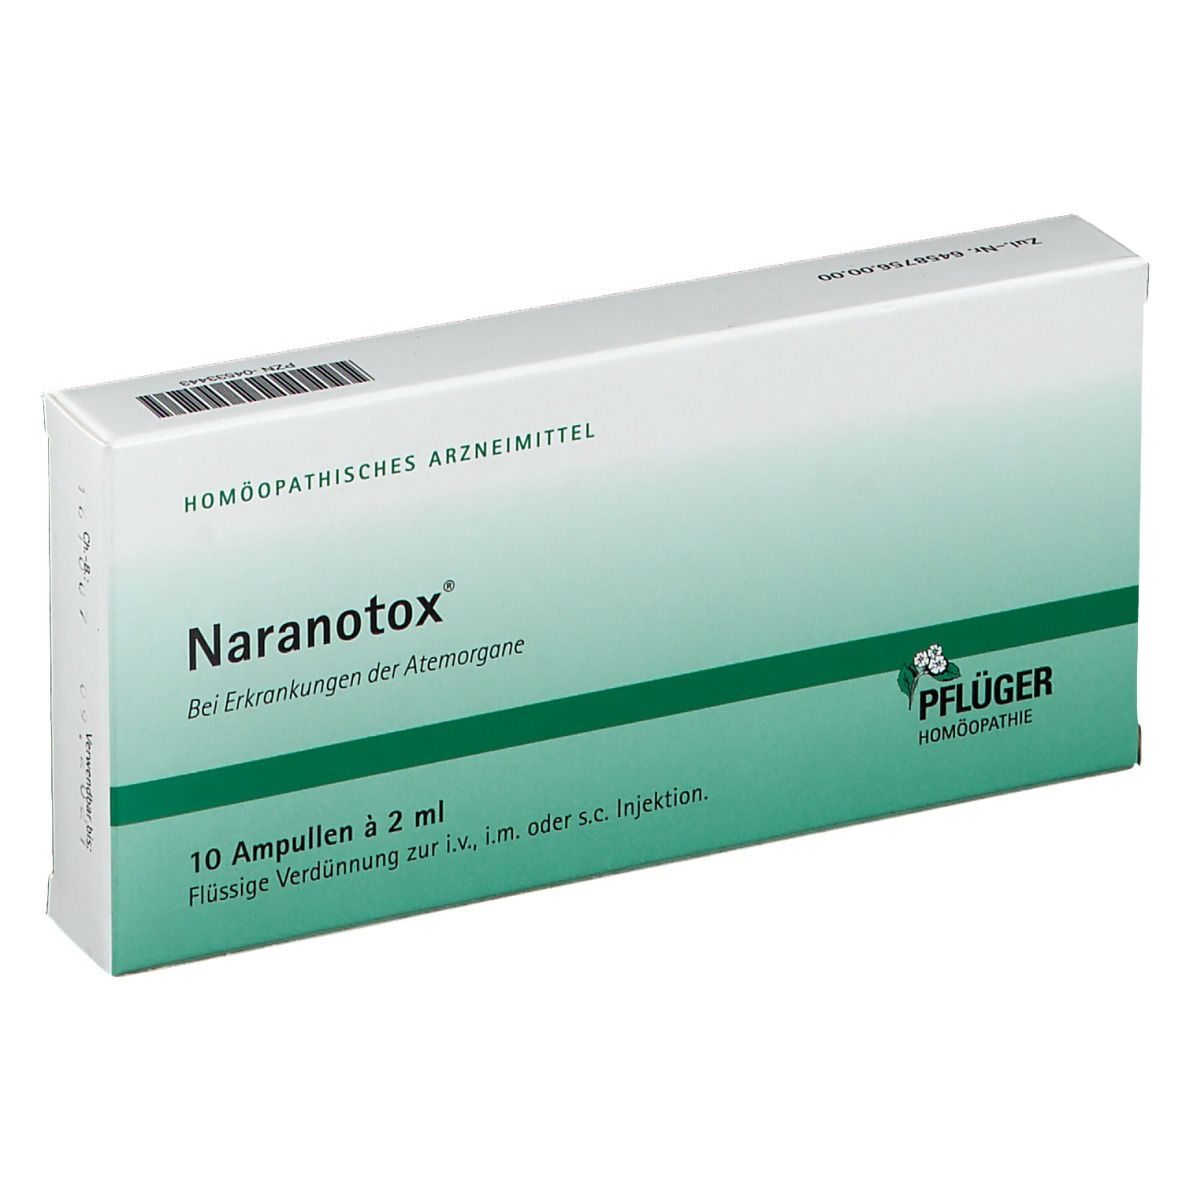 Naranotox®